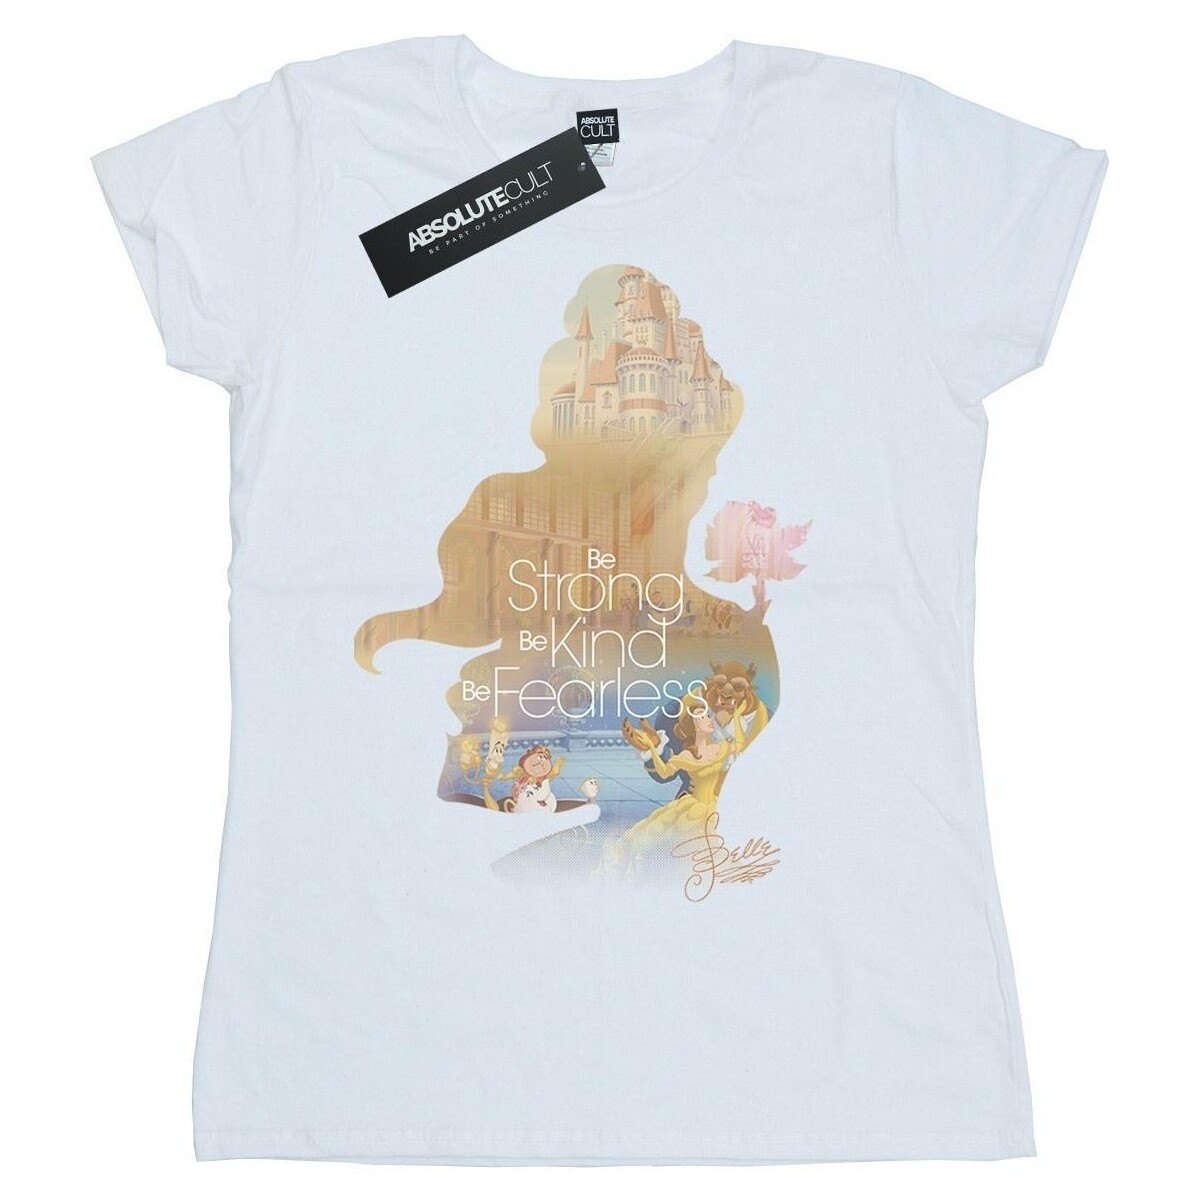 Vêtements Femme T-shirts manches longues Disney Belle Filled Silhouette Blanc